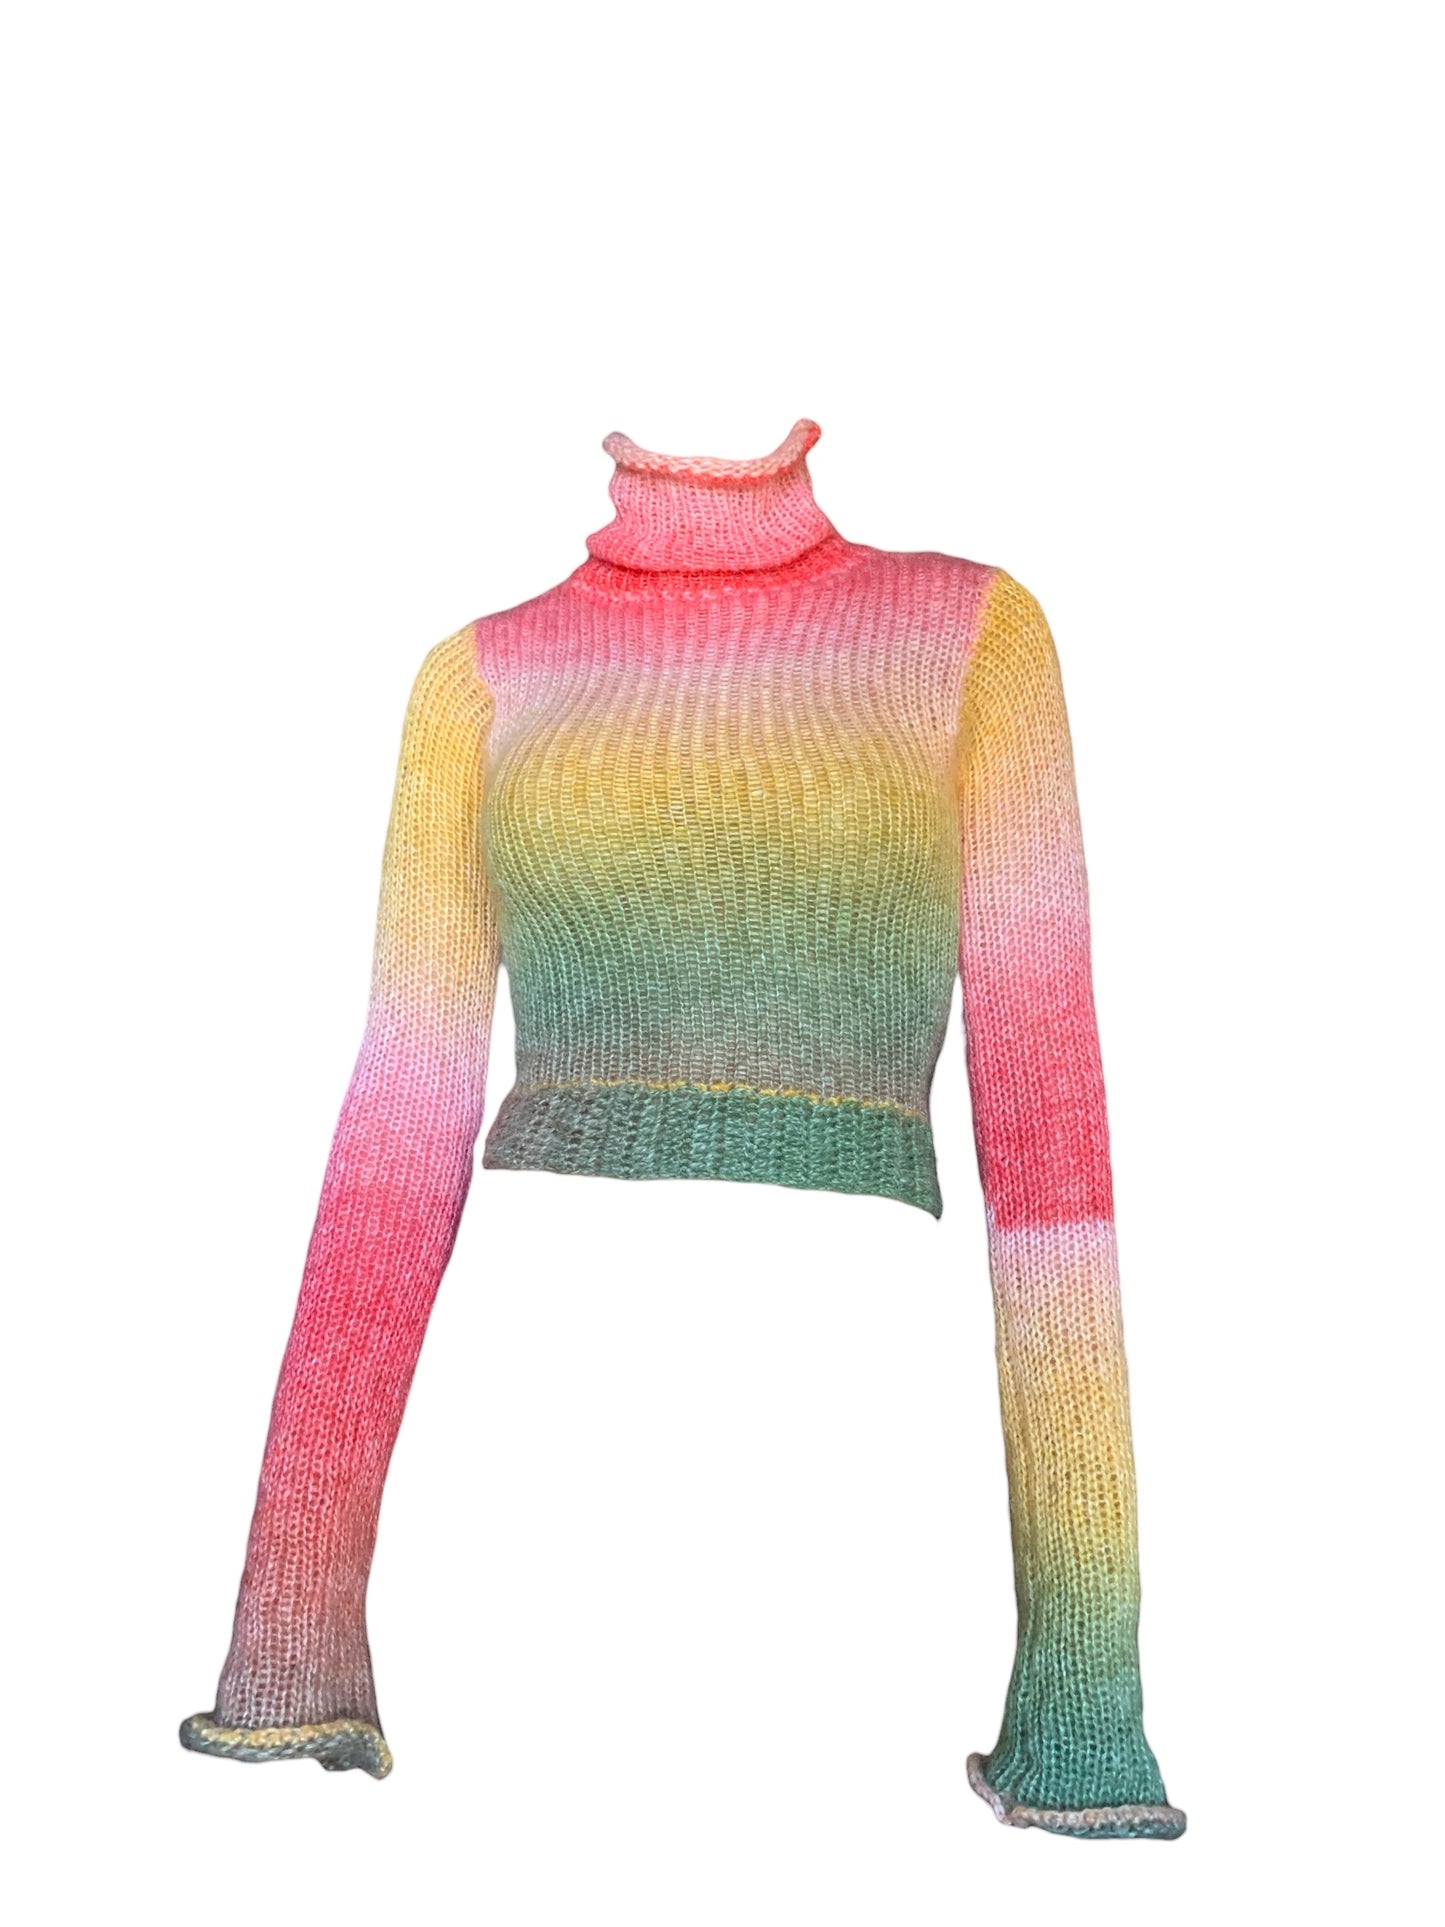 Mohair Knitted x Crochet Sweater